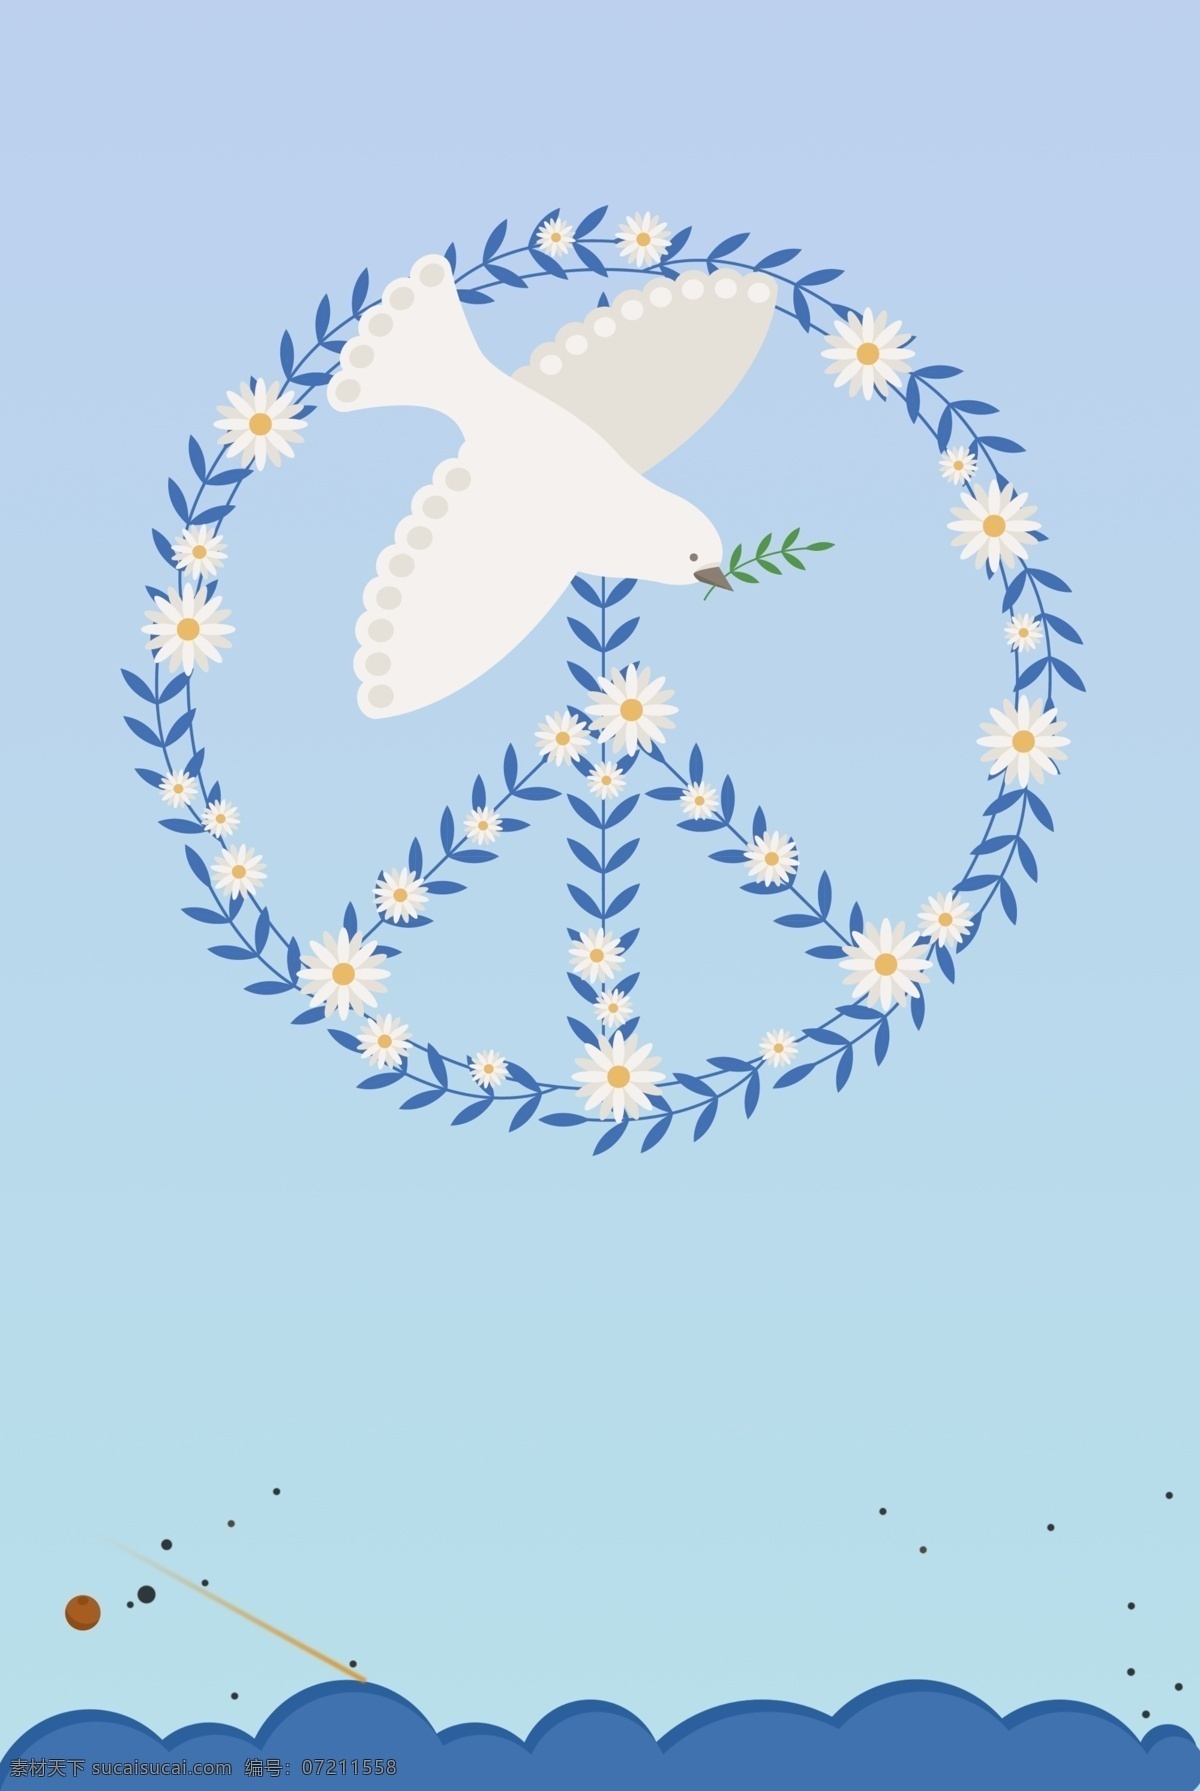 世界 平日 国际 和平 扁平 简约 宣传海报 世界和平日 国际和平 和平鸽 花束 矢量云彩 展板 背景